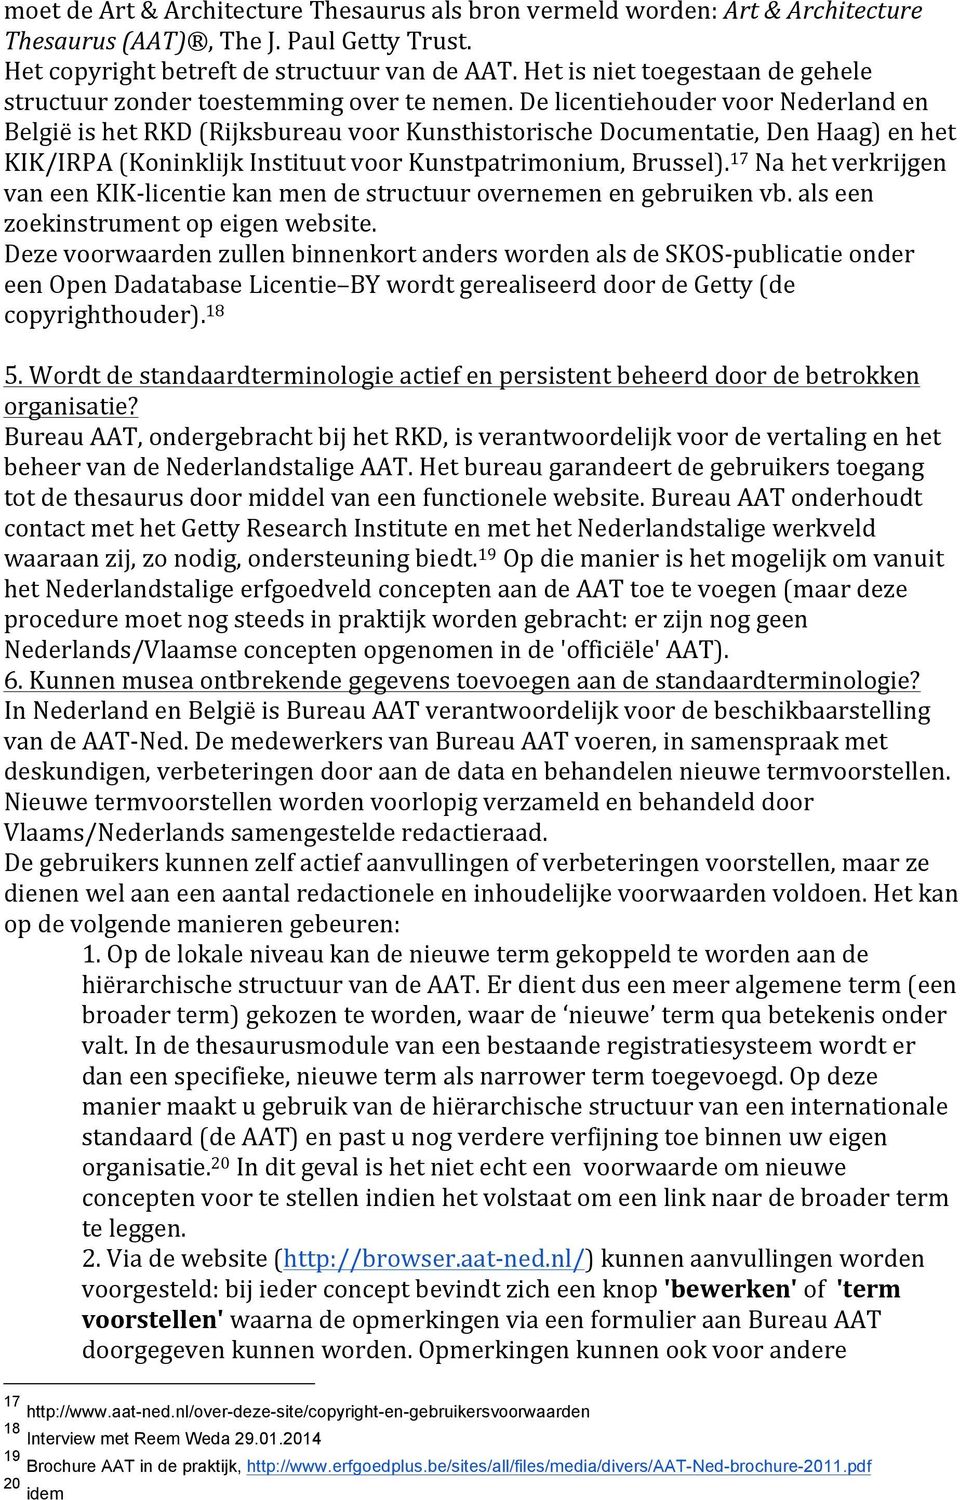 De licentiehouder voor Nederland en België is het RKD (Rijksbureau voor Kunsthistorische Documentatie, Den Haag) en het KIK/IRPA (Koninklijk Instituut voor Kunstpatrimonium, Brussel).